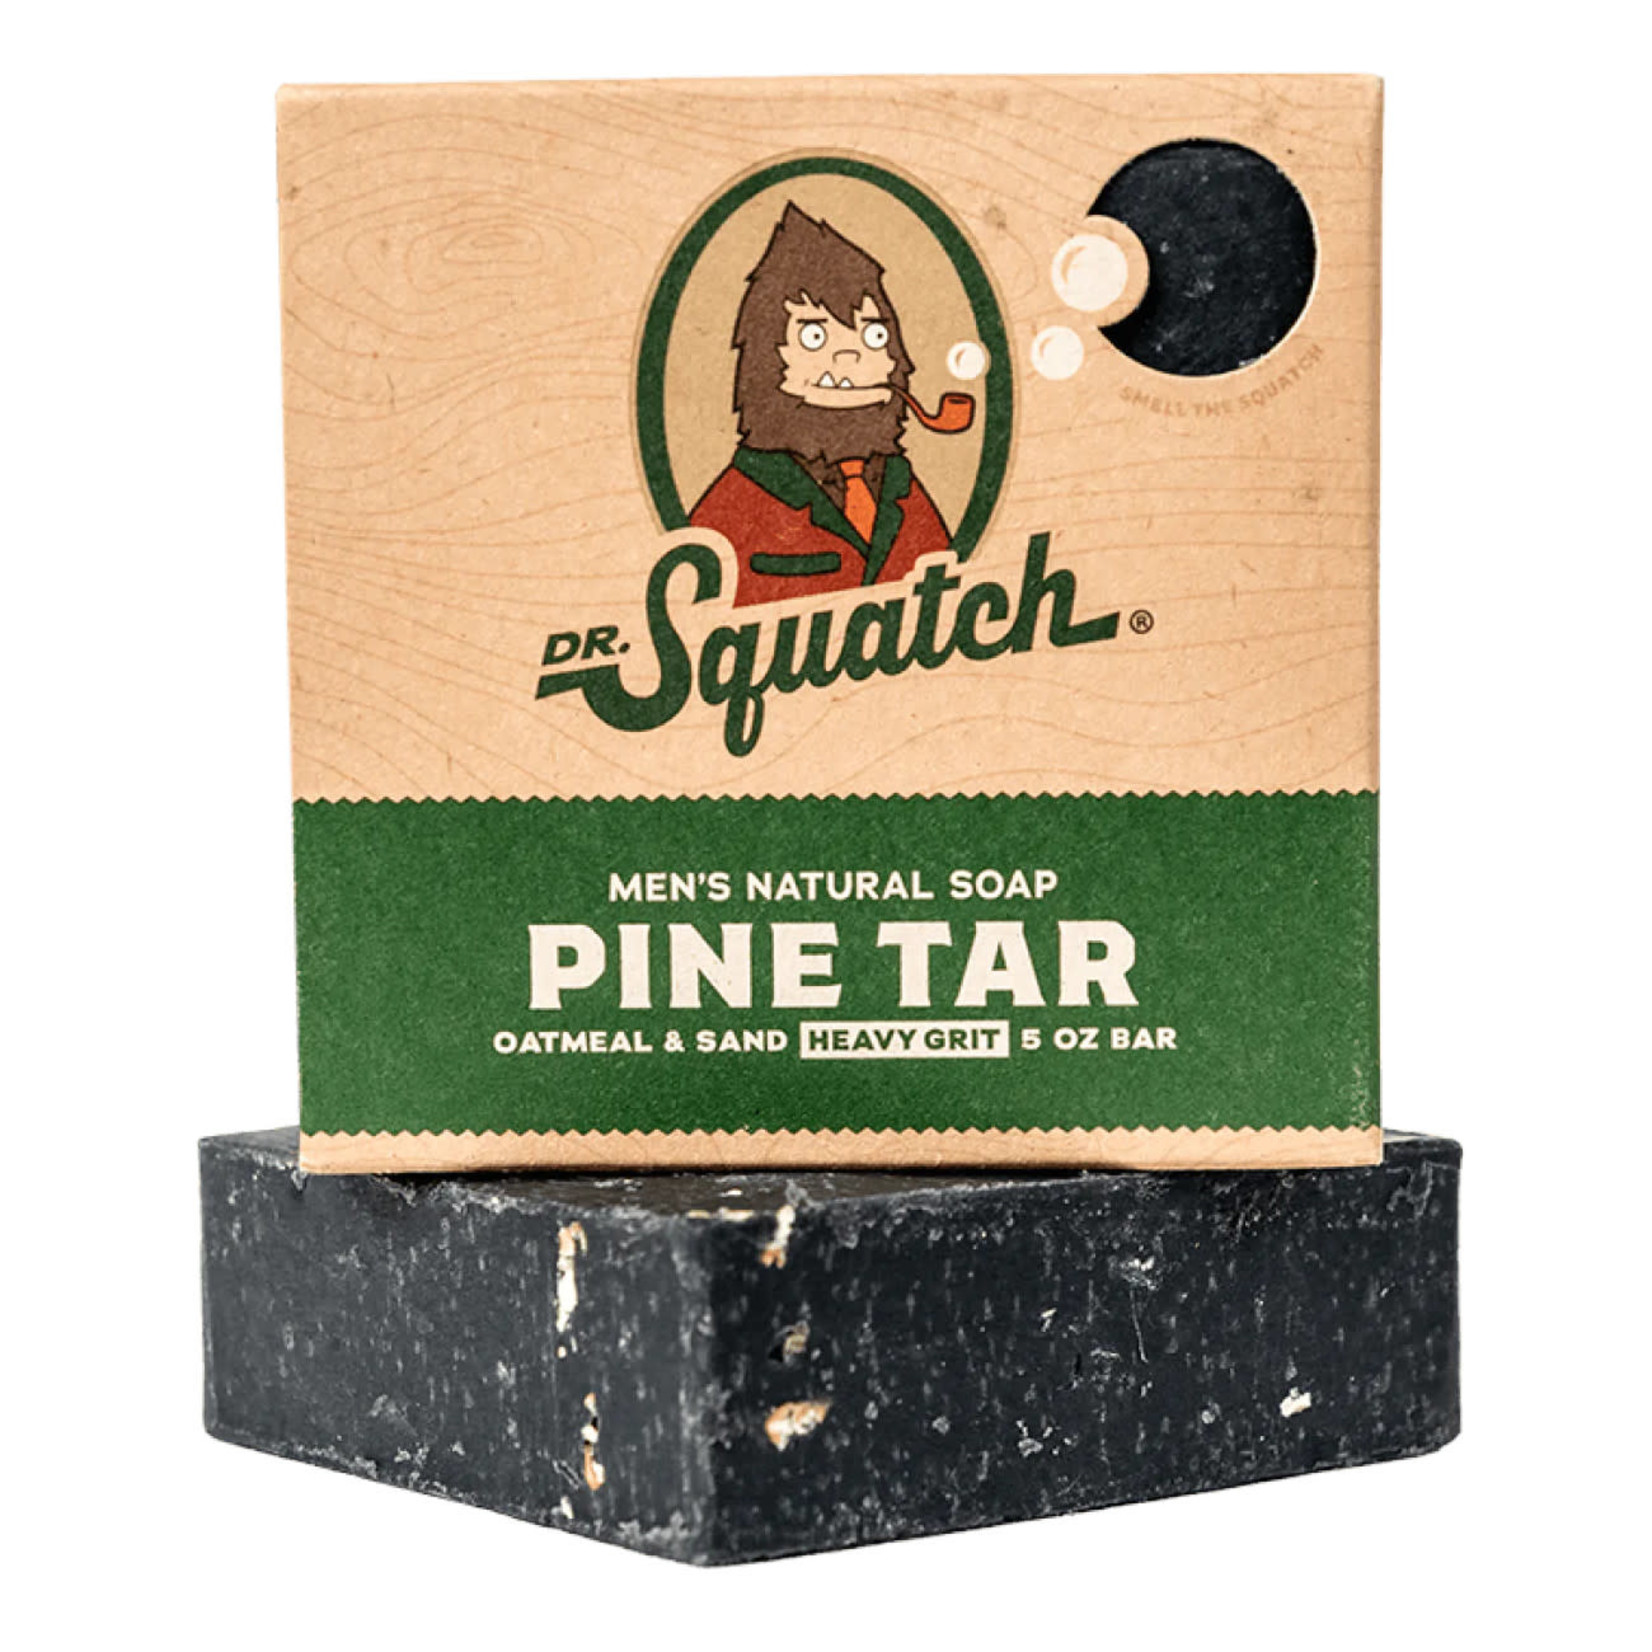 Pine Tar Bar Soap - Pico's Worldwide